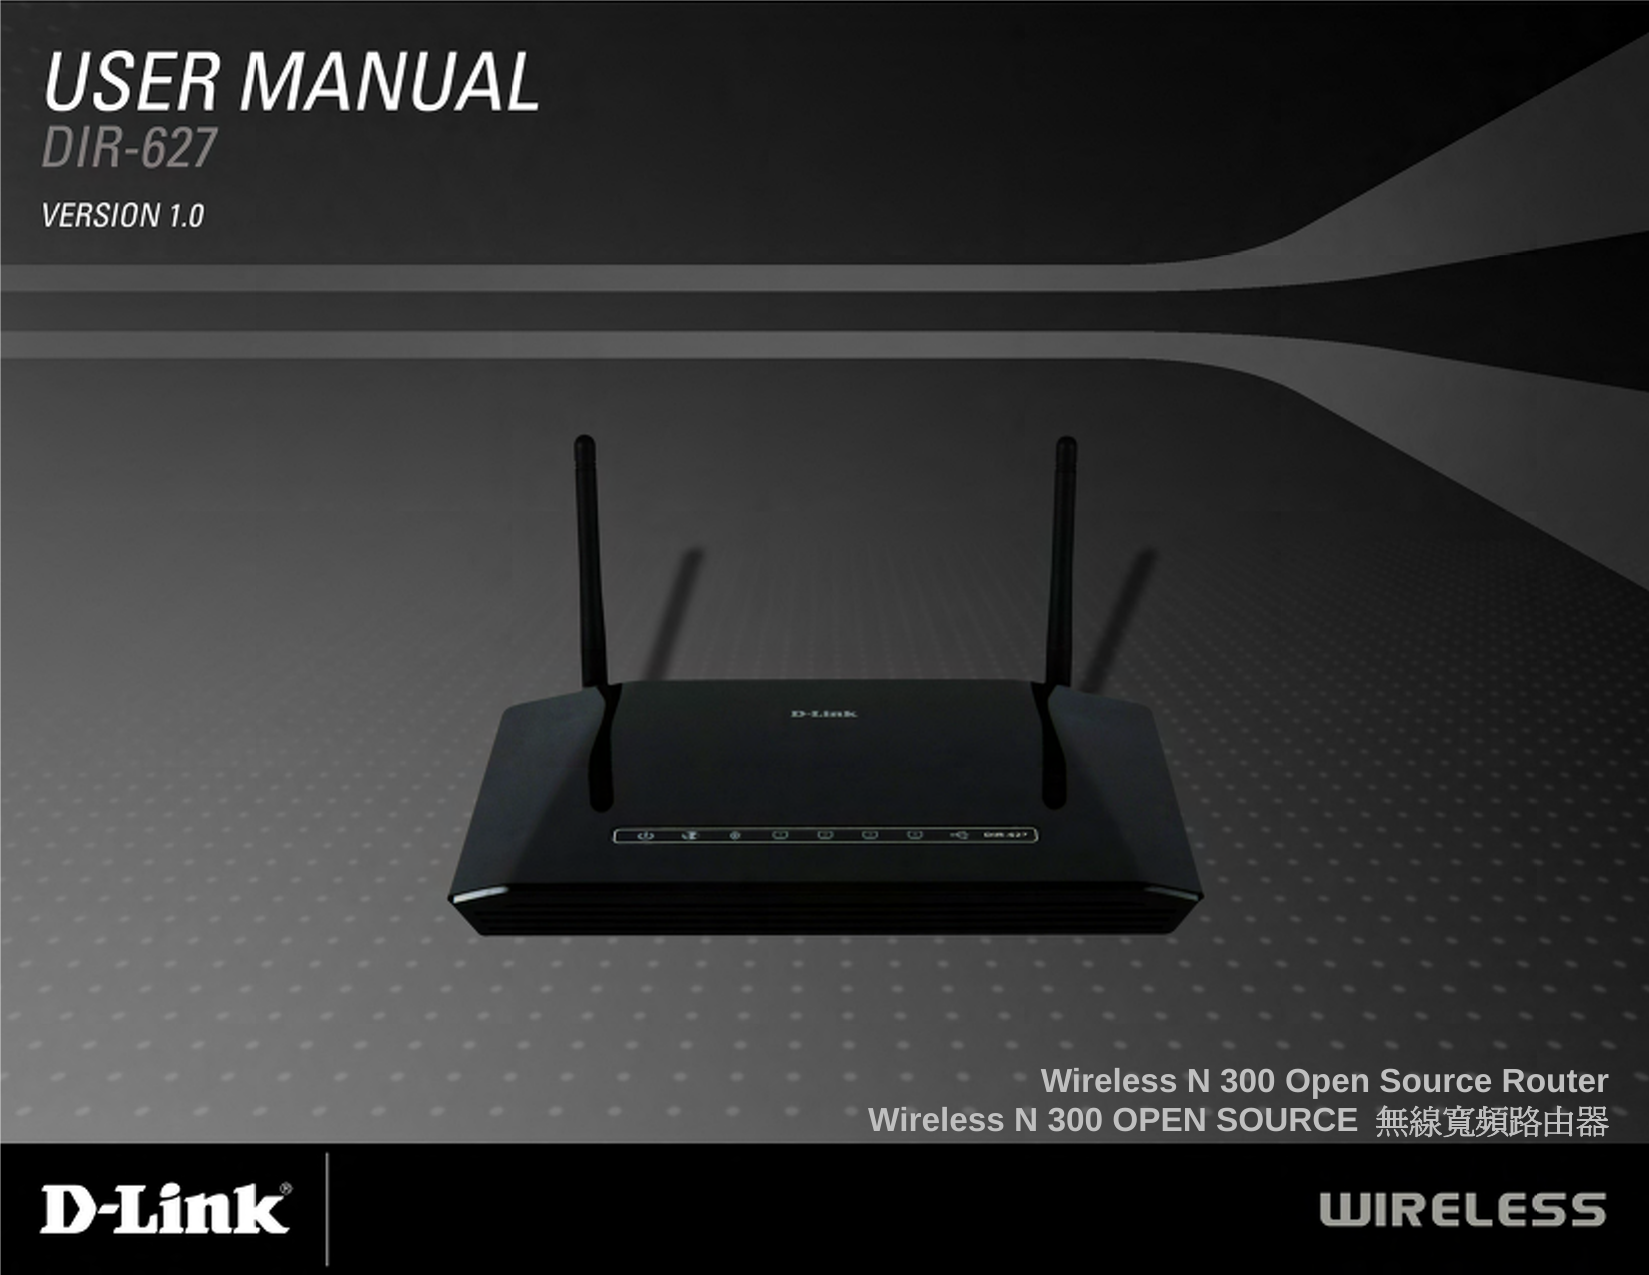 Wireless N 300 Open Source Router Wireless N 300 OPEN SOURCE  無線寬頻路由器 